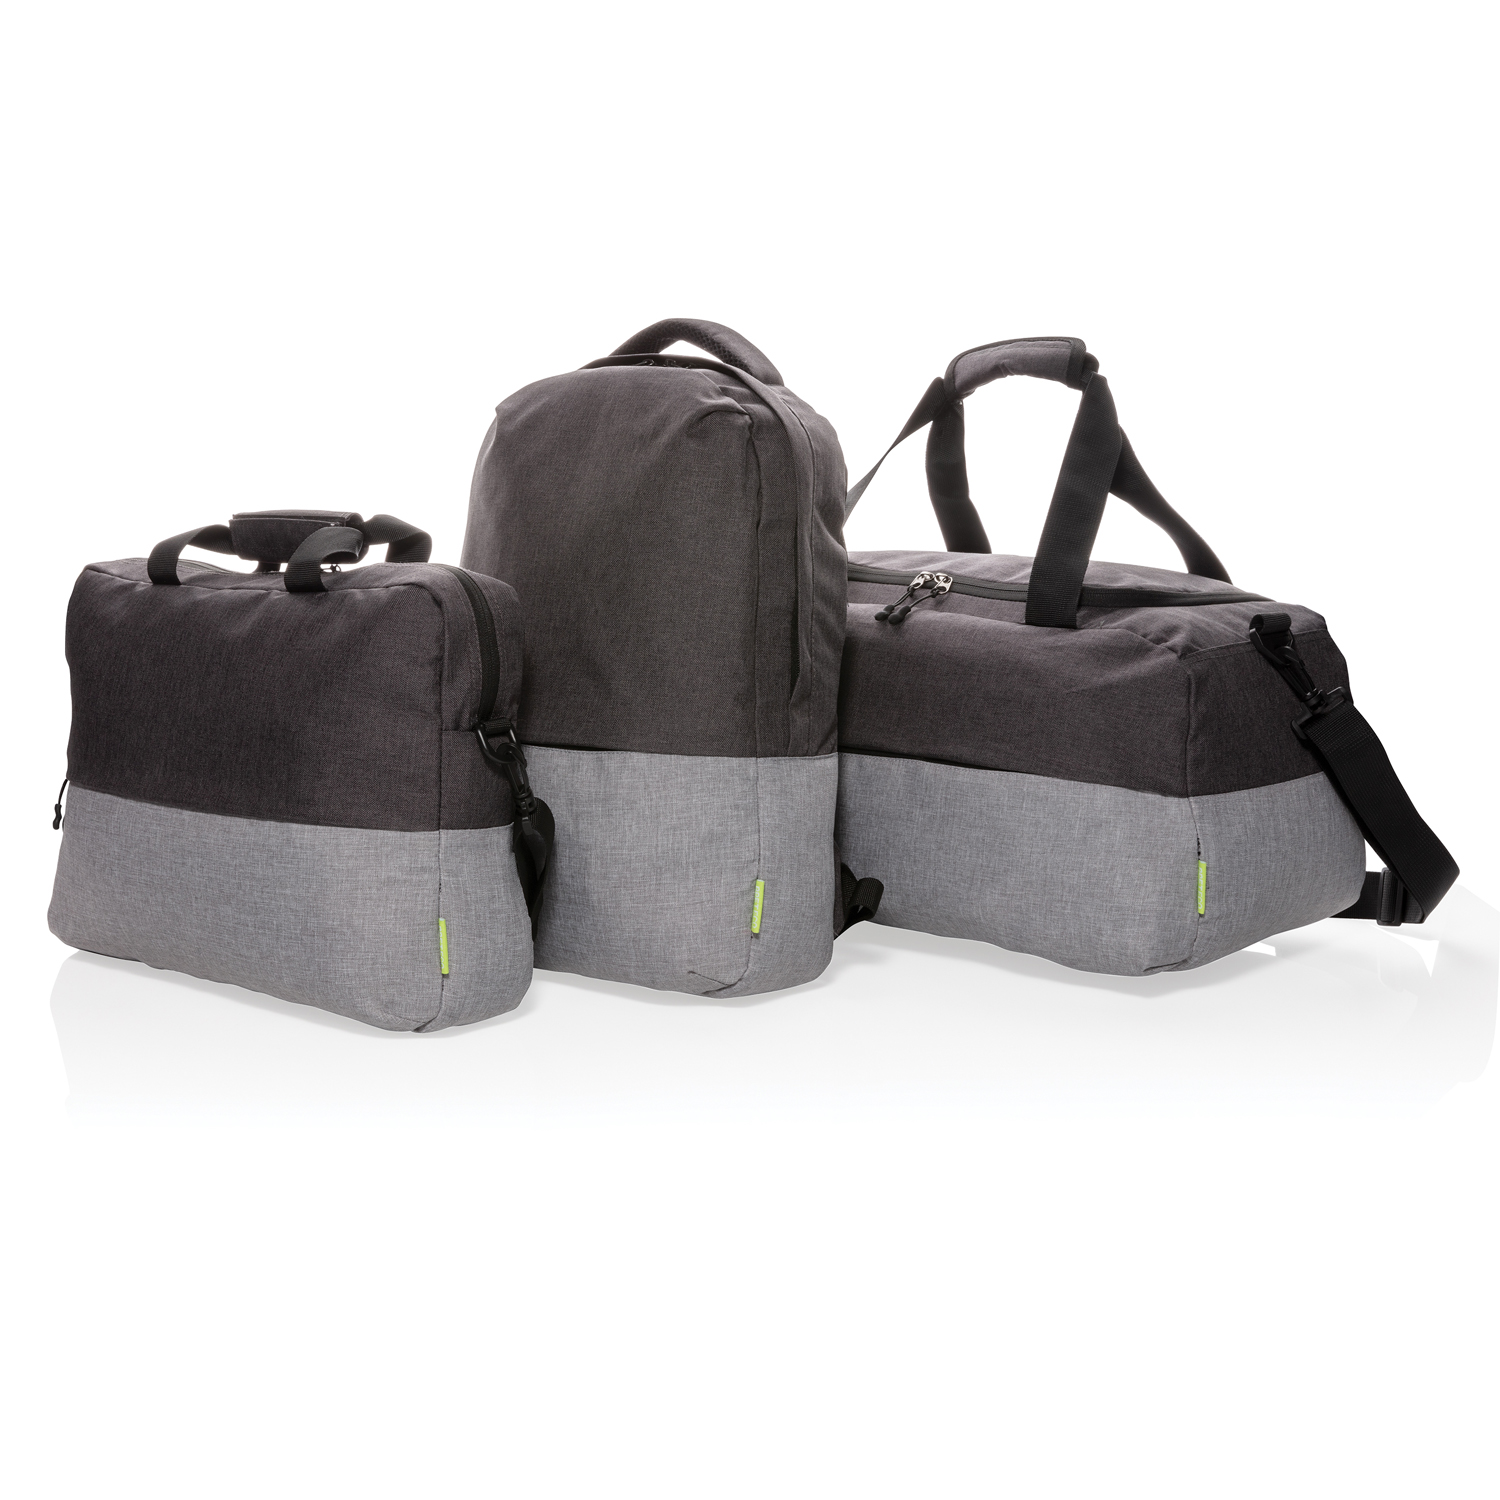 Рюкзак для ноутбука Duo color 15.6” с RFID защитой (не содержит ПВХ)